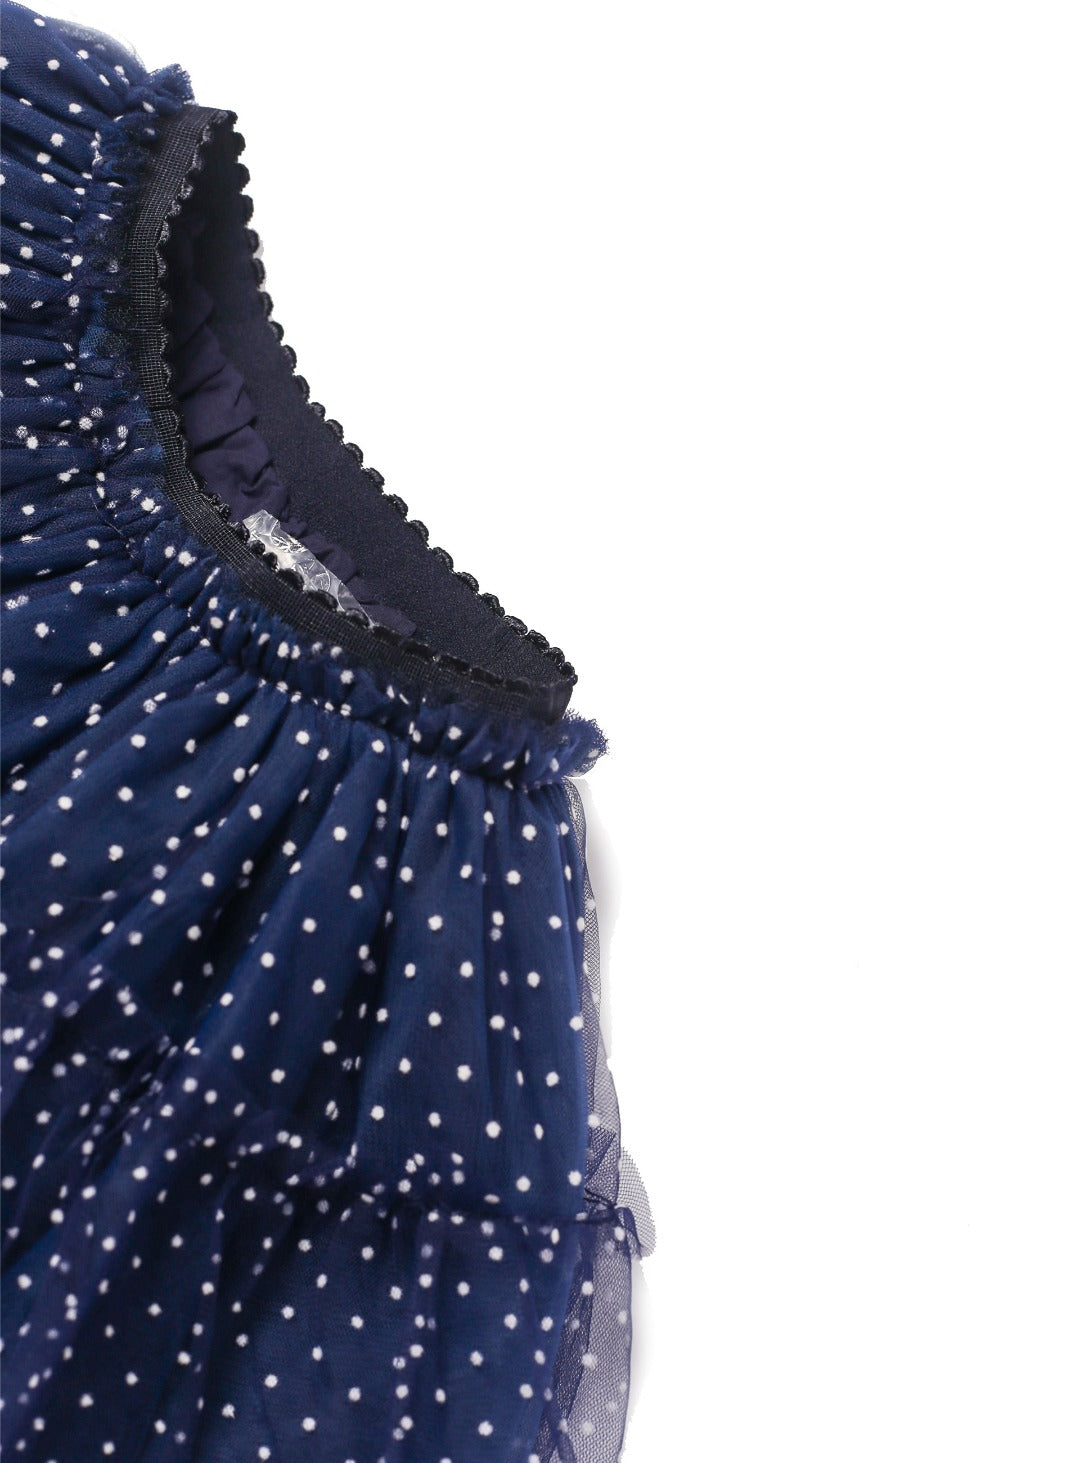 royal blue tutu skirt with mini white dot 